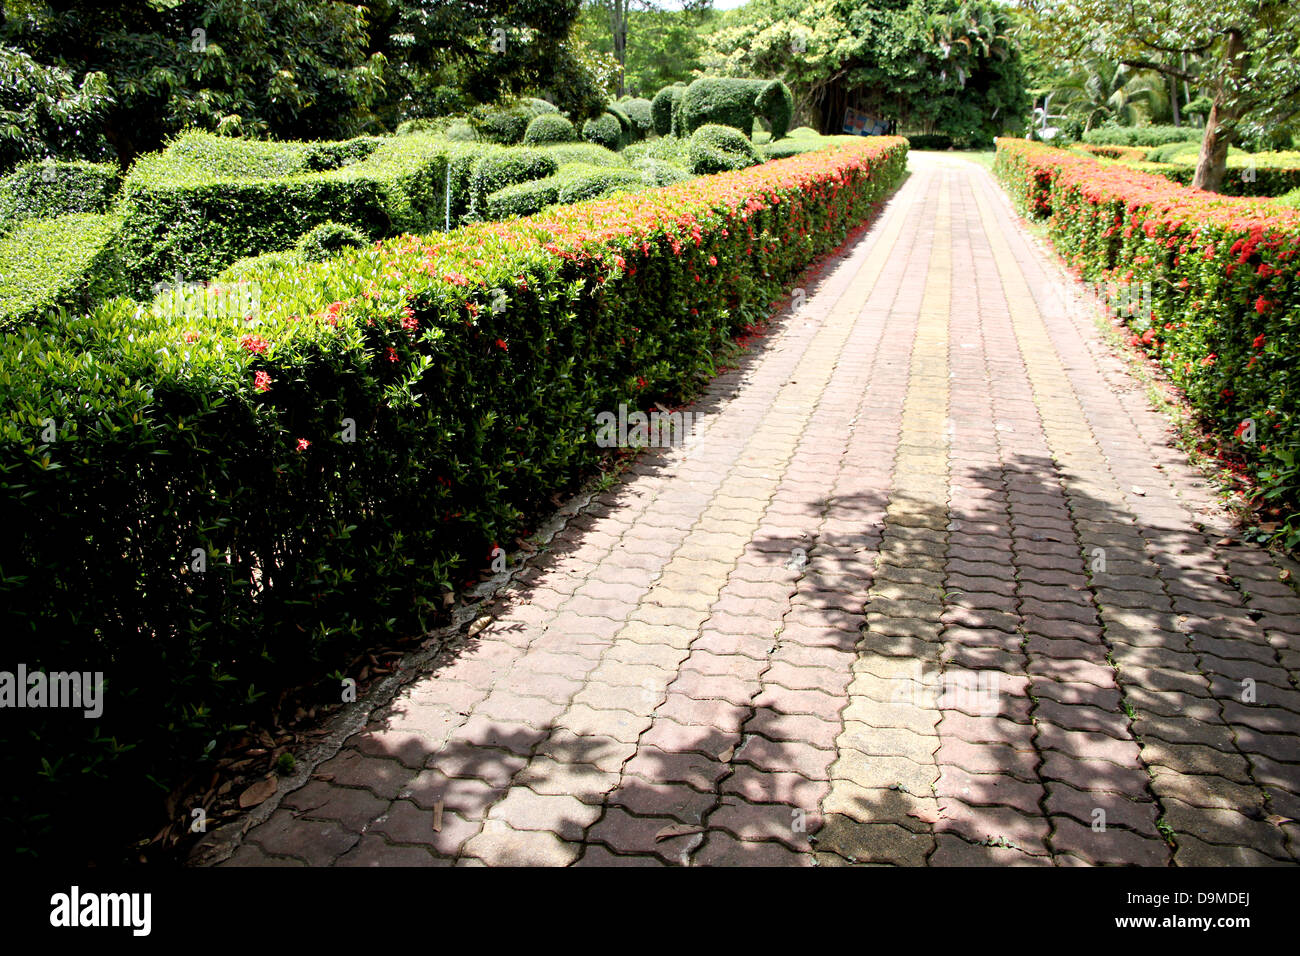 El camino pavimentado con ladrillos en el jardín. Foto de stock